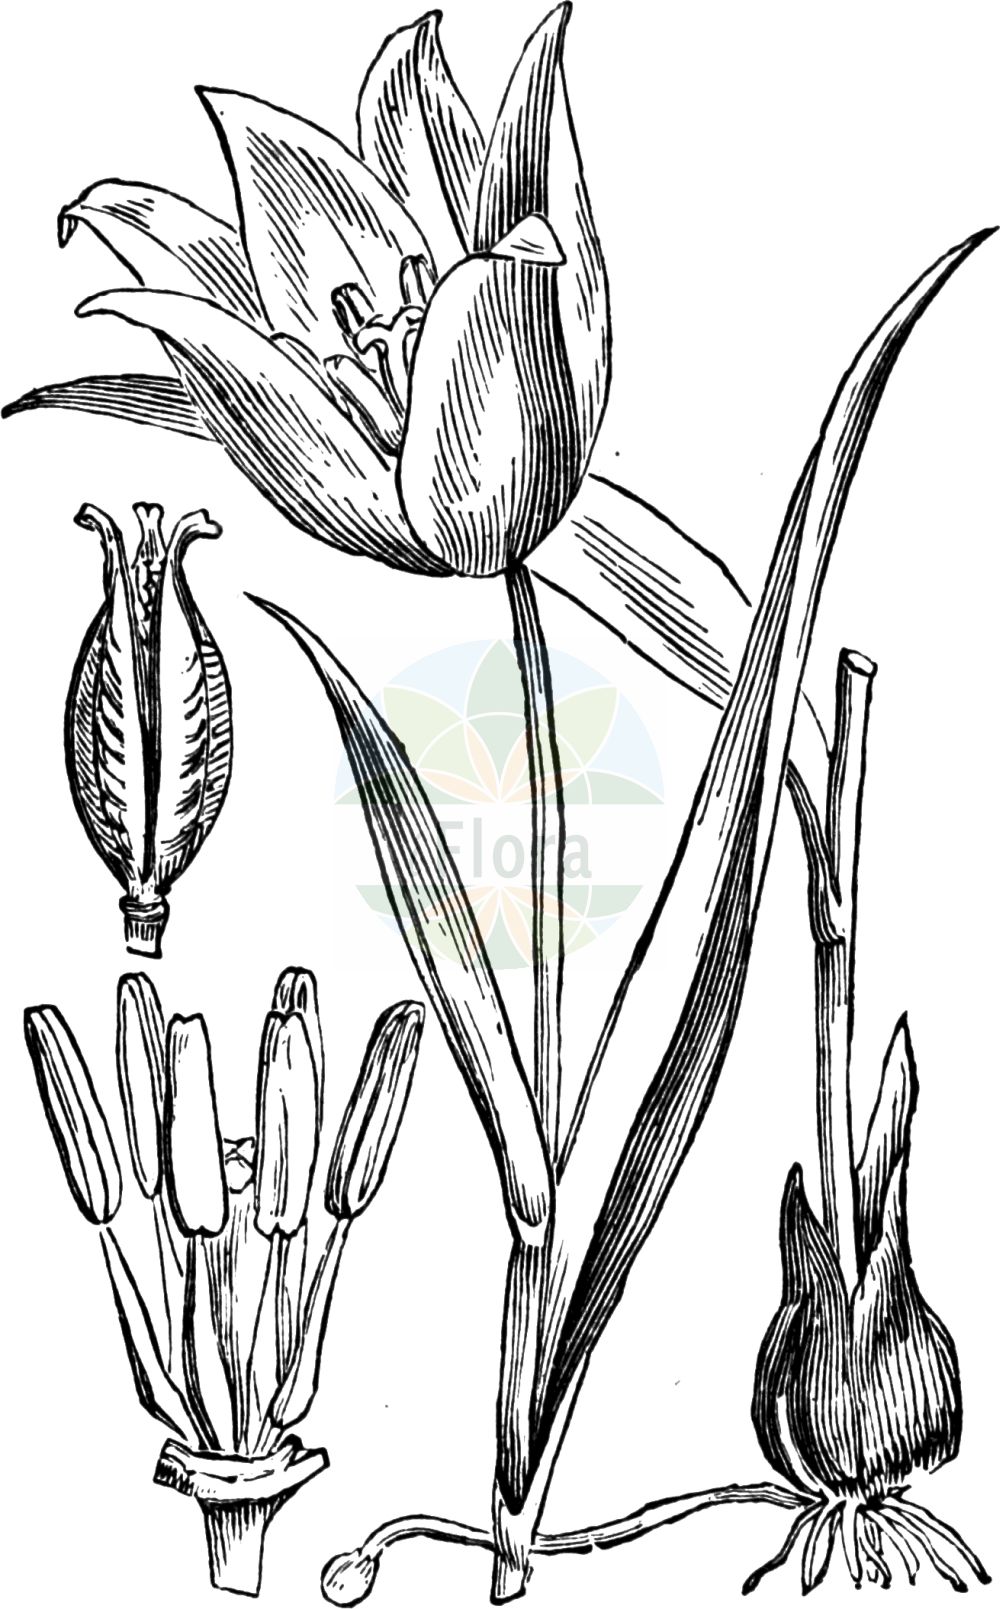 Historische Abbildung von Tulipa sylvestris (Wilde Tulpe - Wild Tulip). Das Bild zeigt Blatt, Bluete, Frucht und Same. ---- Historical Drawing of Tulipa sylvestris (Wilde Tulpe - Wild Tulip). The image is showing leaf, flower, fruit and seed.(Tulipa sylvestris,Wilde Tulpe,Wild Tulip,Liriopogon sylvestre,Tulipa sylvestris,Wilde Tulpe,Wild Tulip,Tulipa,Tulpe,Tulip,Liliaceae,Liliengewächse,Lily family,Blatt,Bluete,Frucht,Same,leaf,flower,fruit,seed,Fitch et al. (1880))